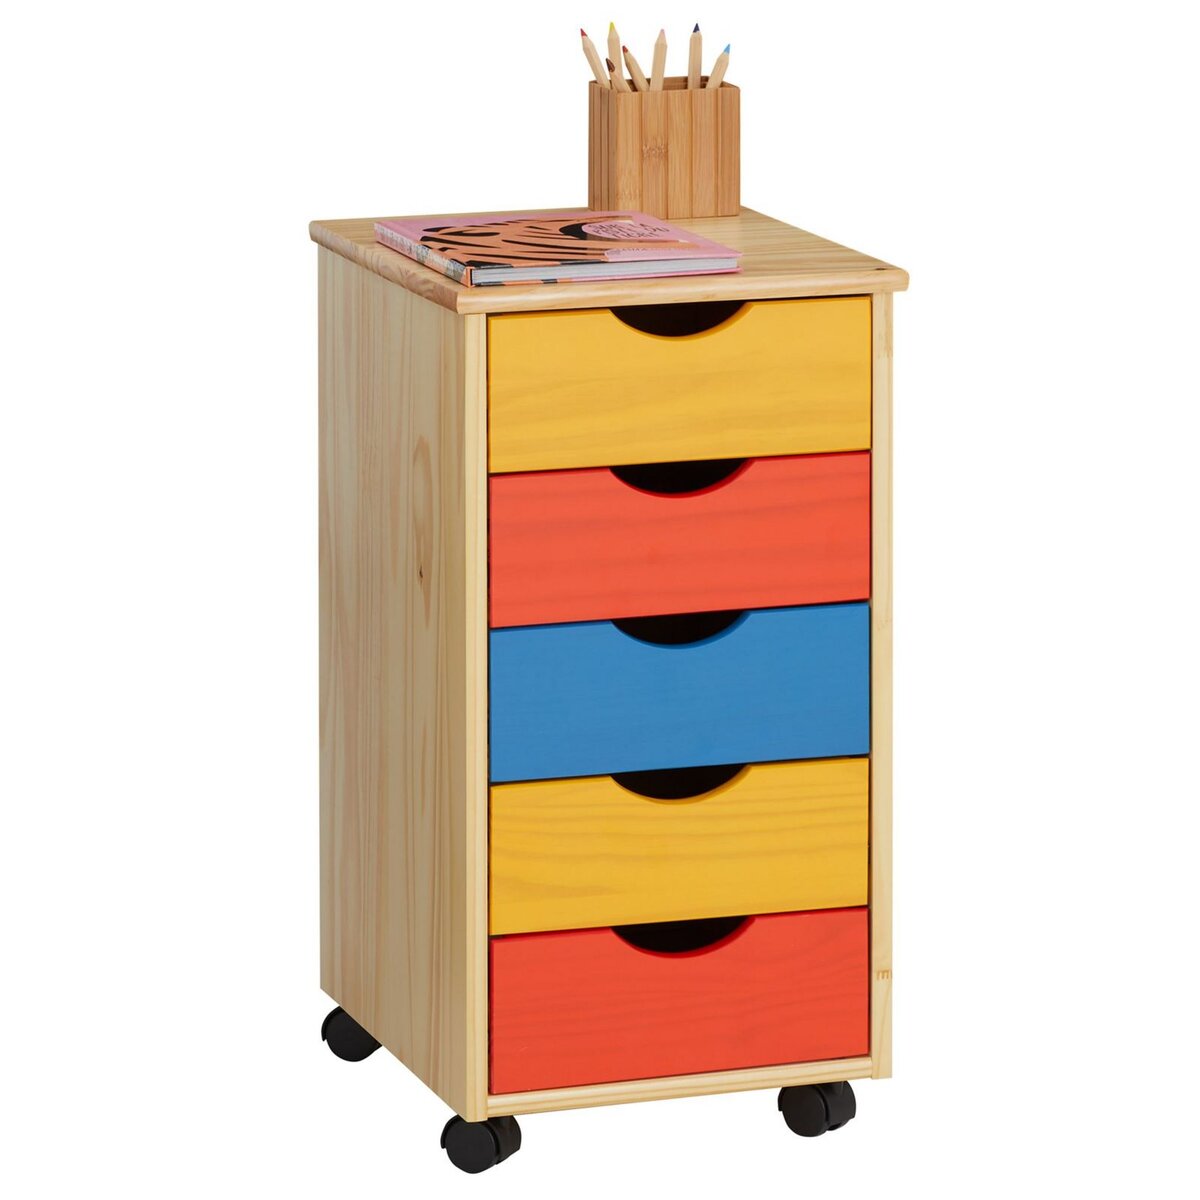 IDIMEX Caisson de bureau LAGOS meuble de rangement sur roulettes avec 5  tiroirs, en pin massif lasuré multicolore jaune rose et bleu